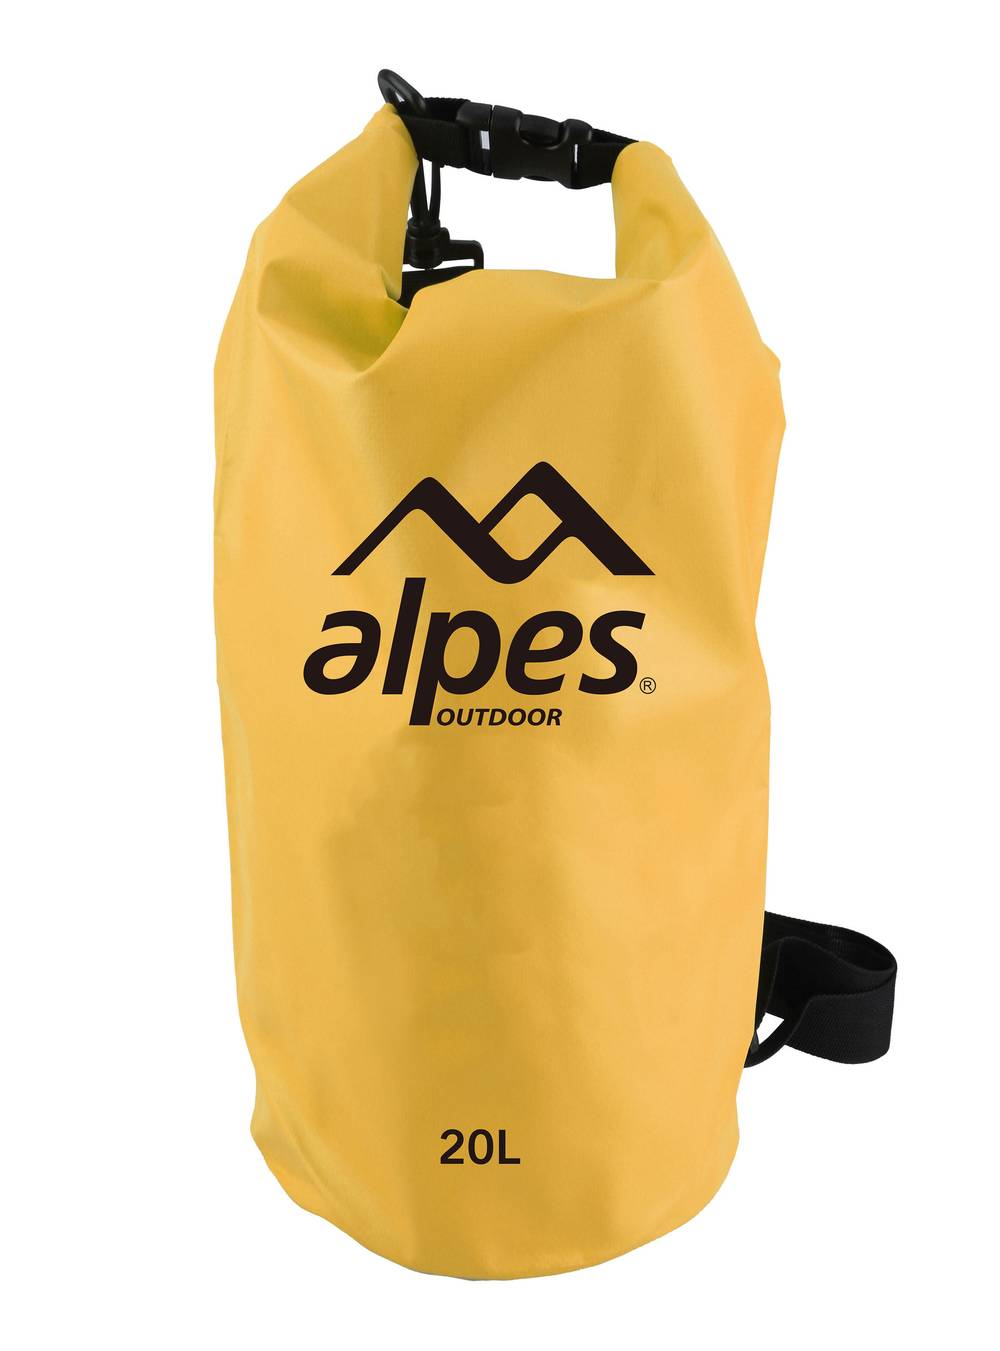 Alpes bolsa impermeable (20 l)